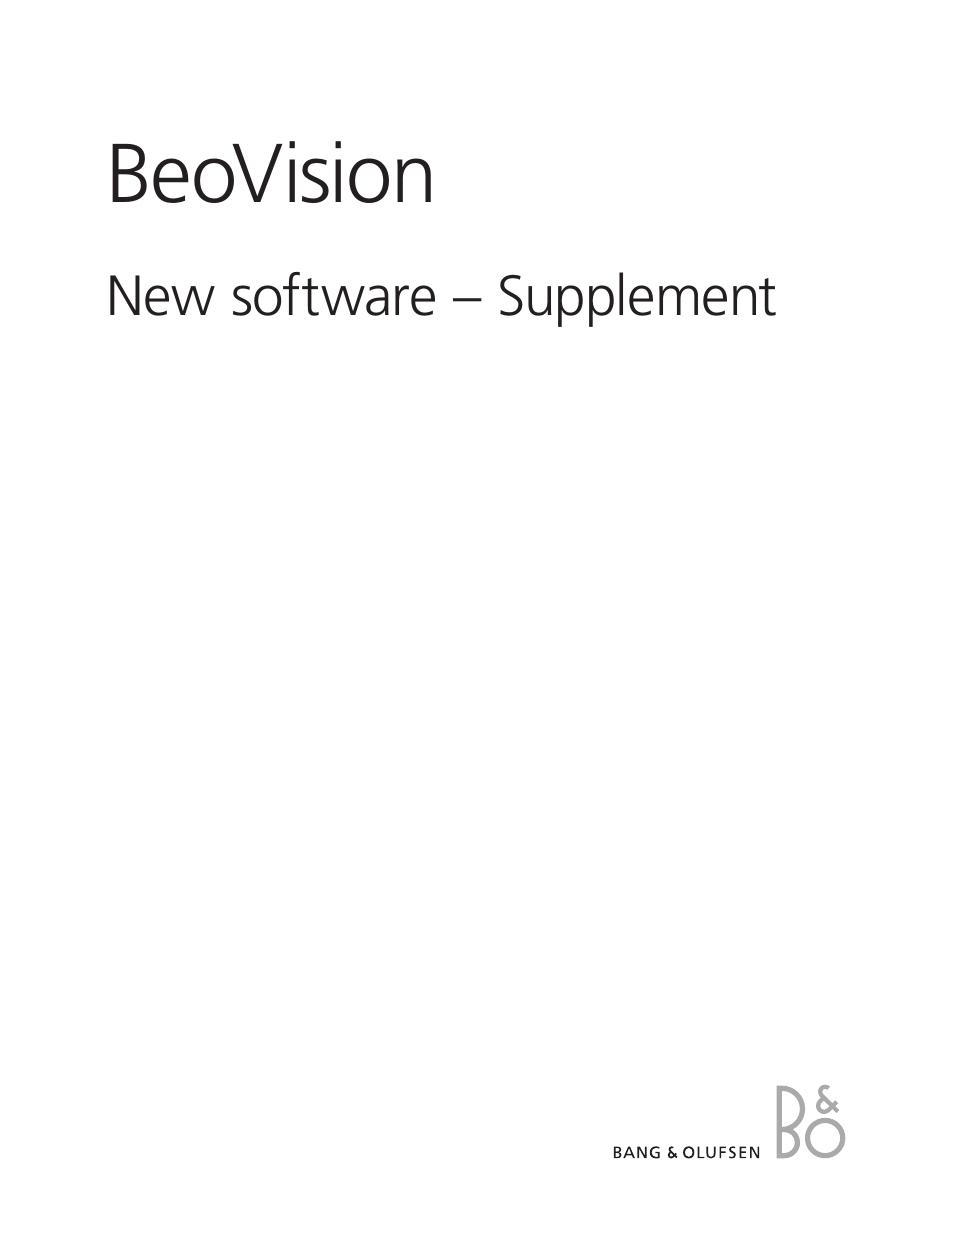 BeoVision 9 Supplement